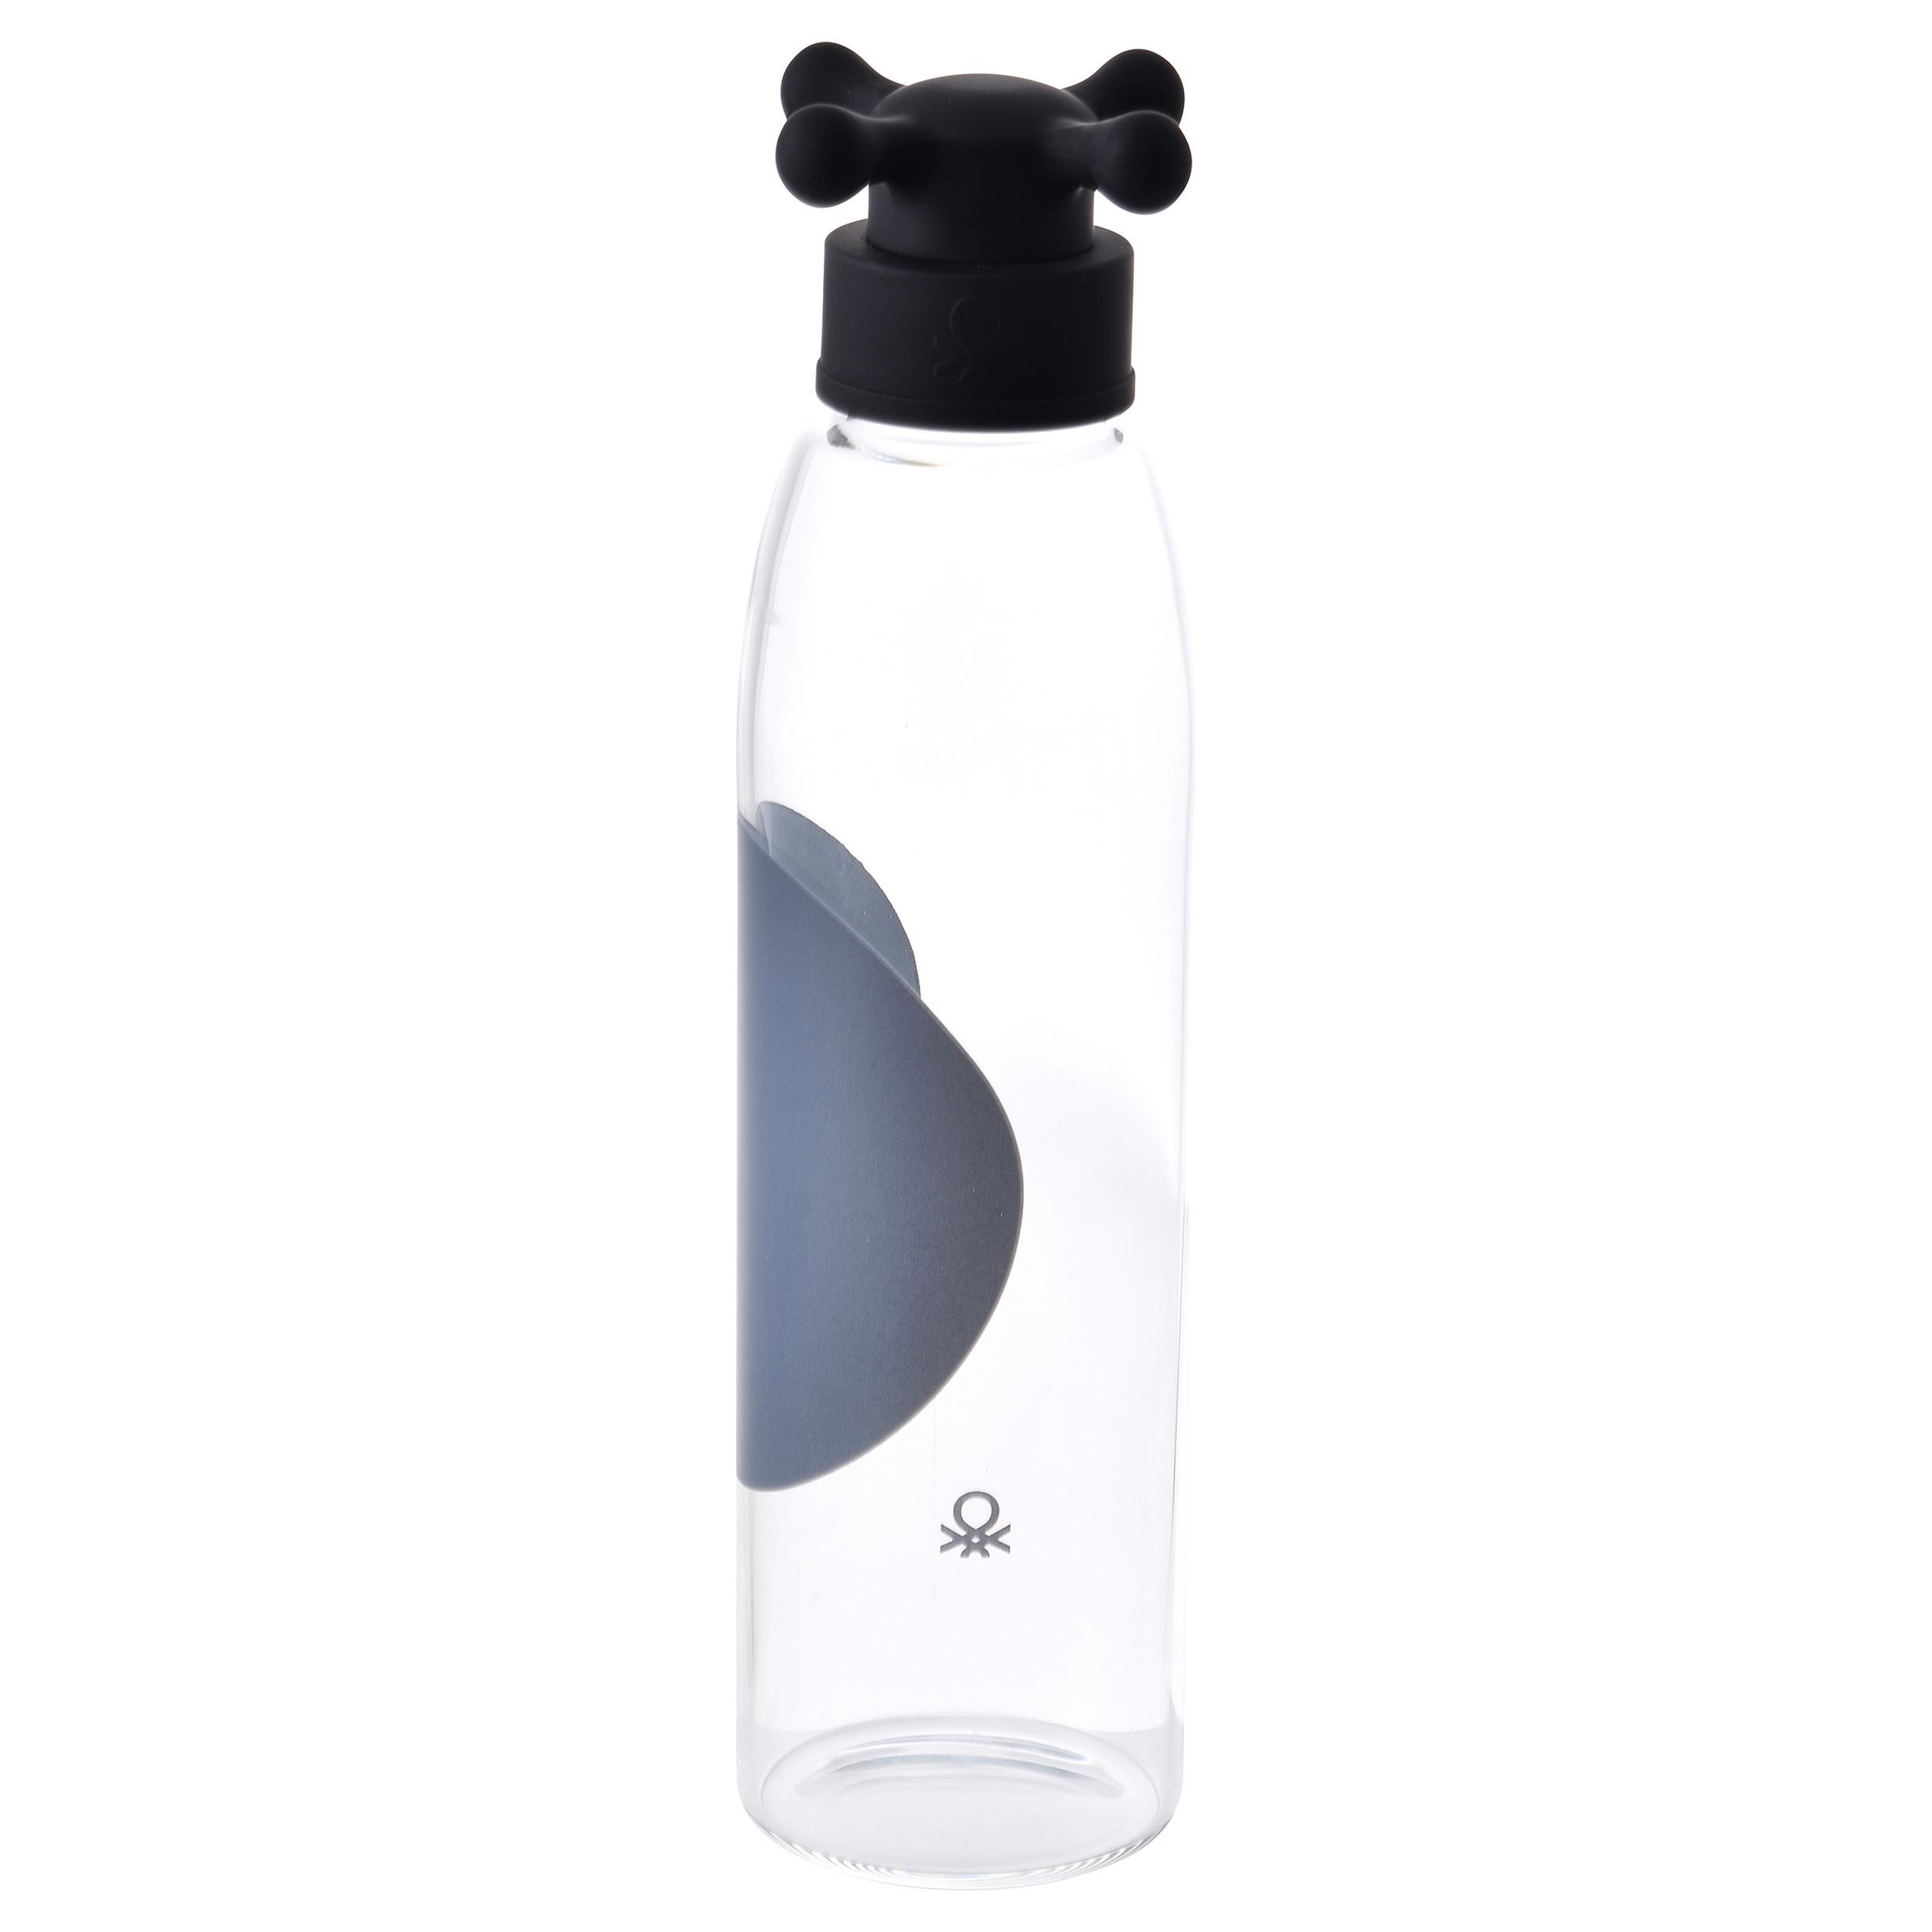 Trinkflasche Black & White - Transparent/Schwarz, Basics, Glas/Kunststoff (25,5/6,5/6,5cm) - Benetton